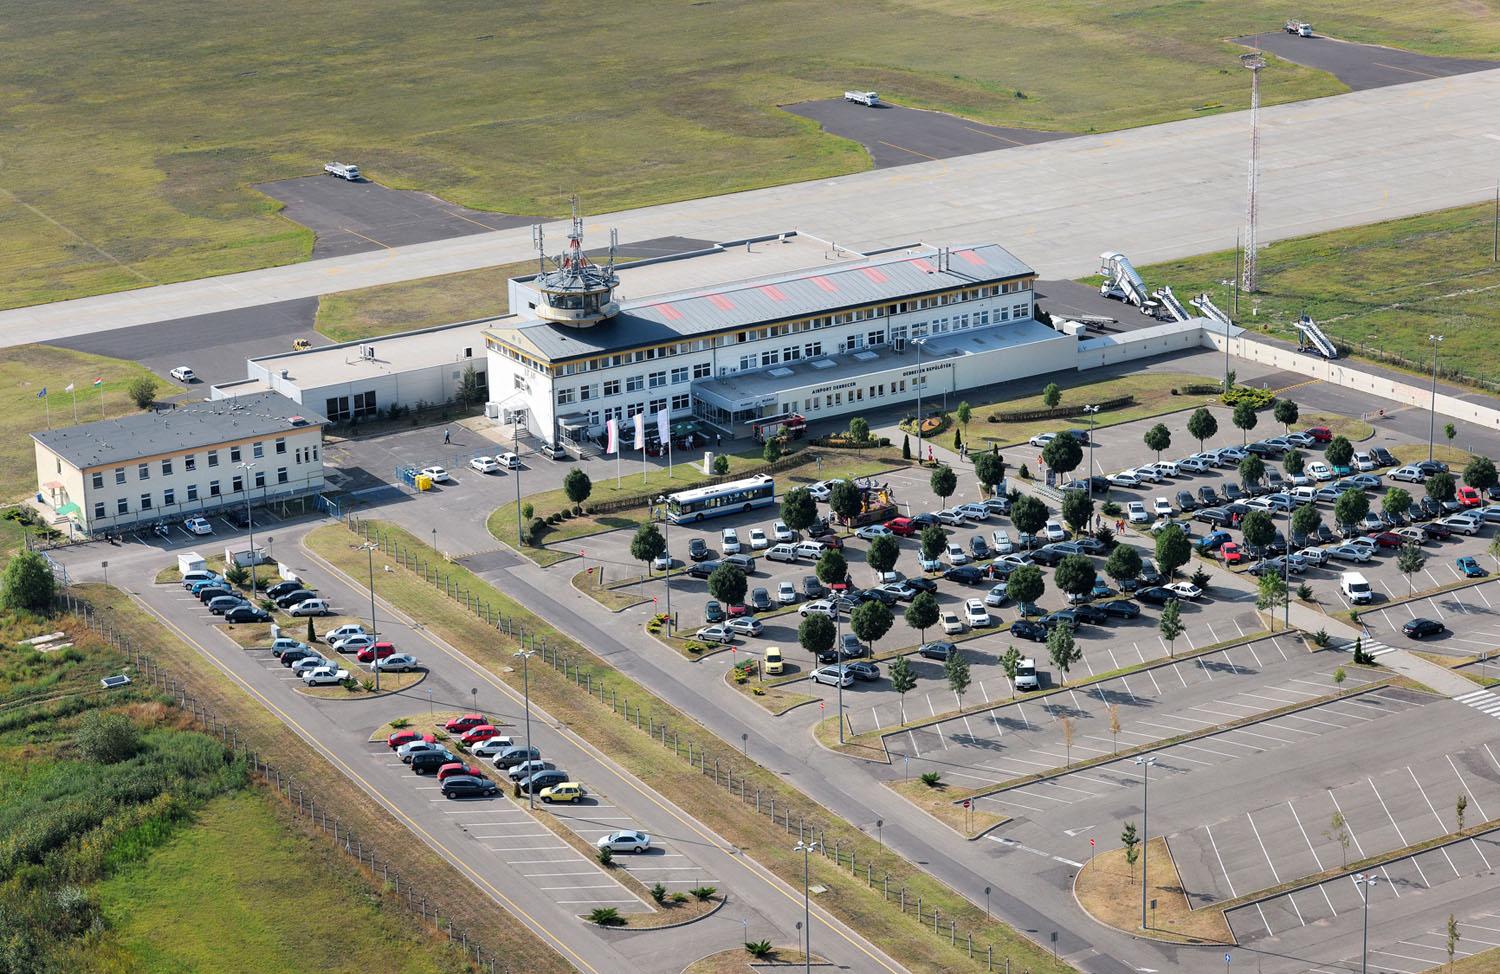 A debreceni repülőtér látképe. Megművelték volna?